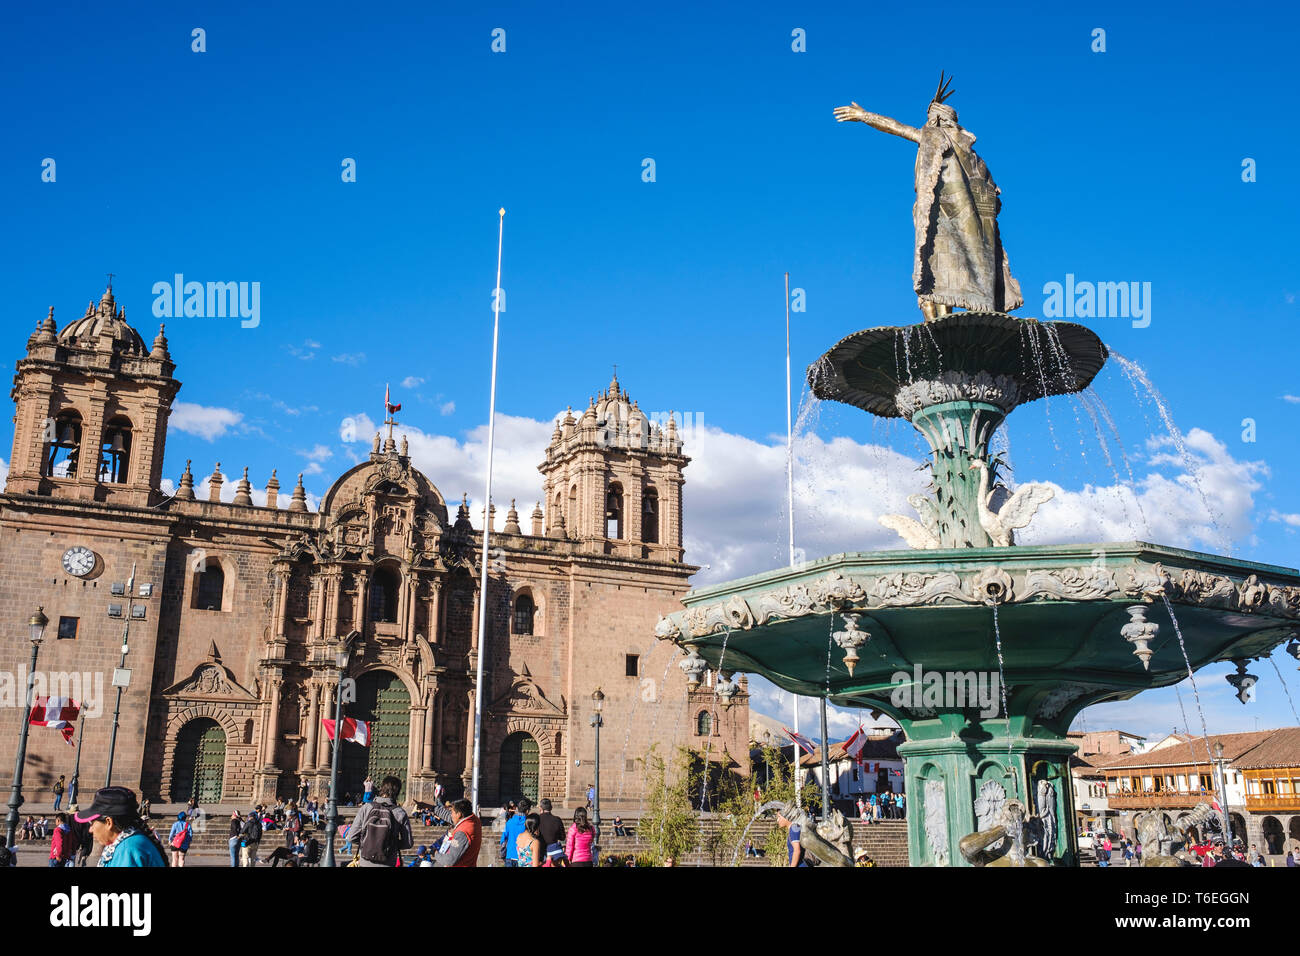 Fontaine avec une statue en or du roi Inca Pachacutec ou Pachacuti à Plaza de Armas ou place principale de Cusco, Pérou Banque D'Images